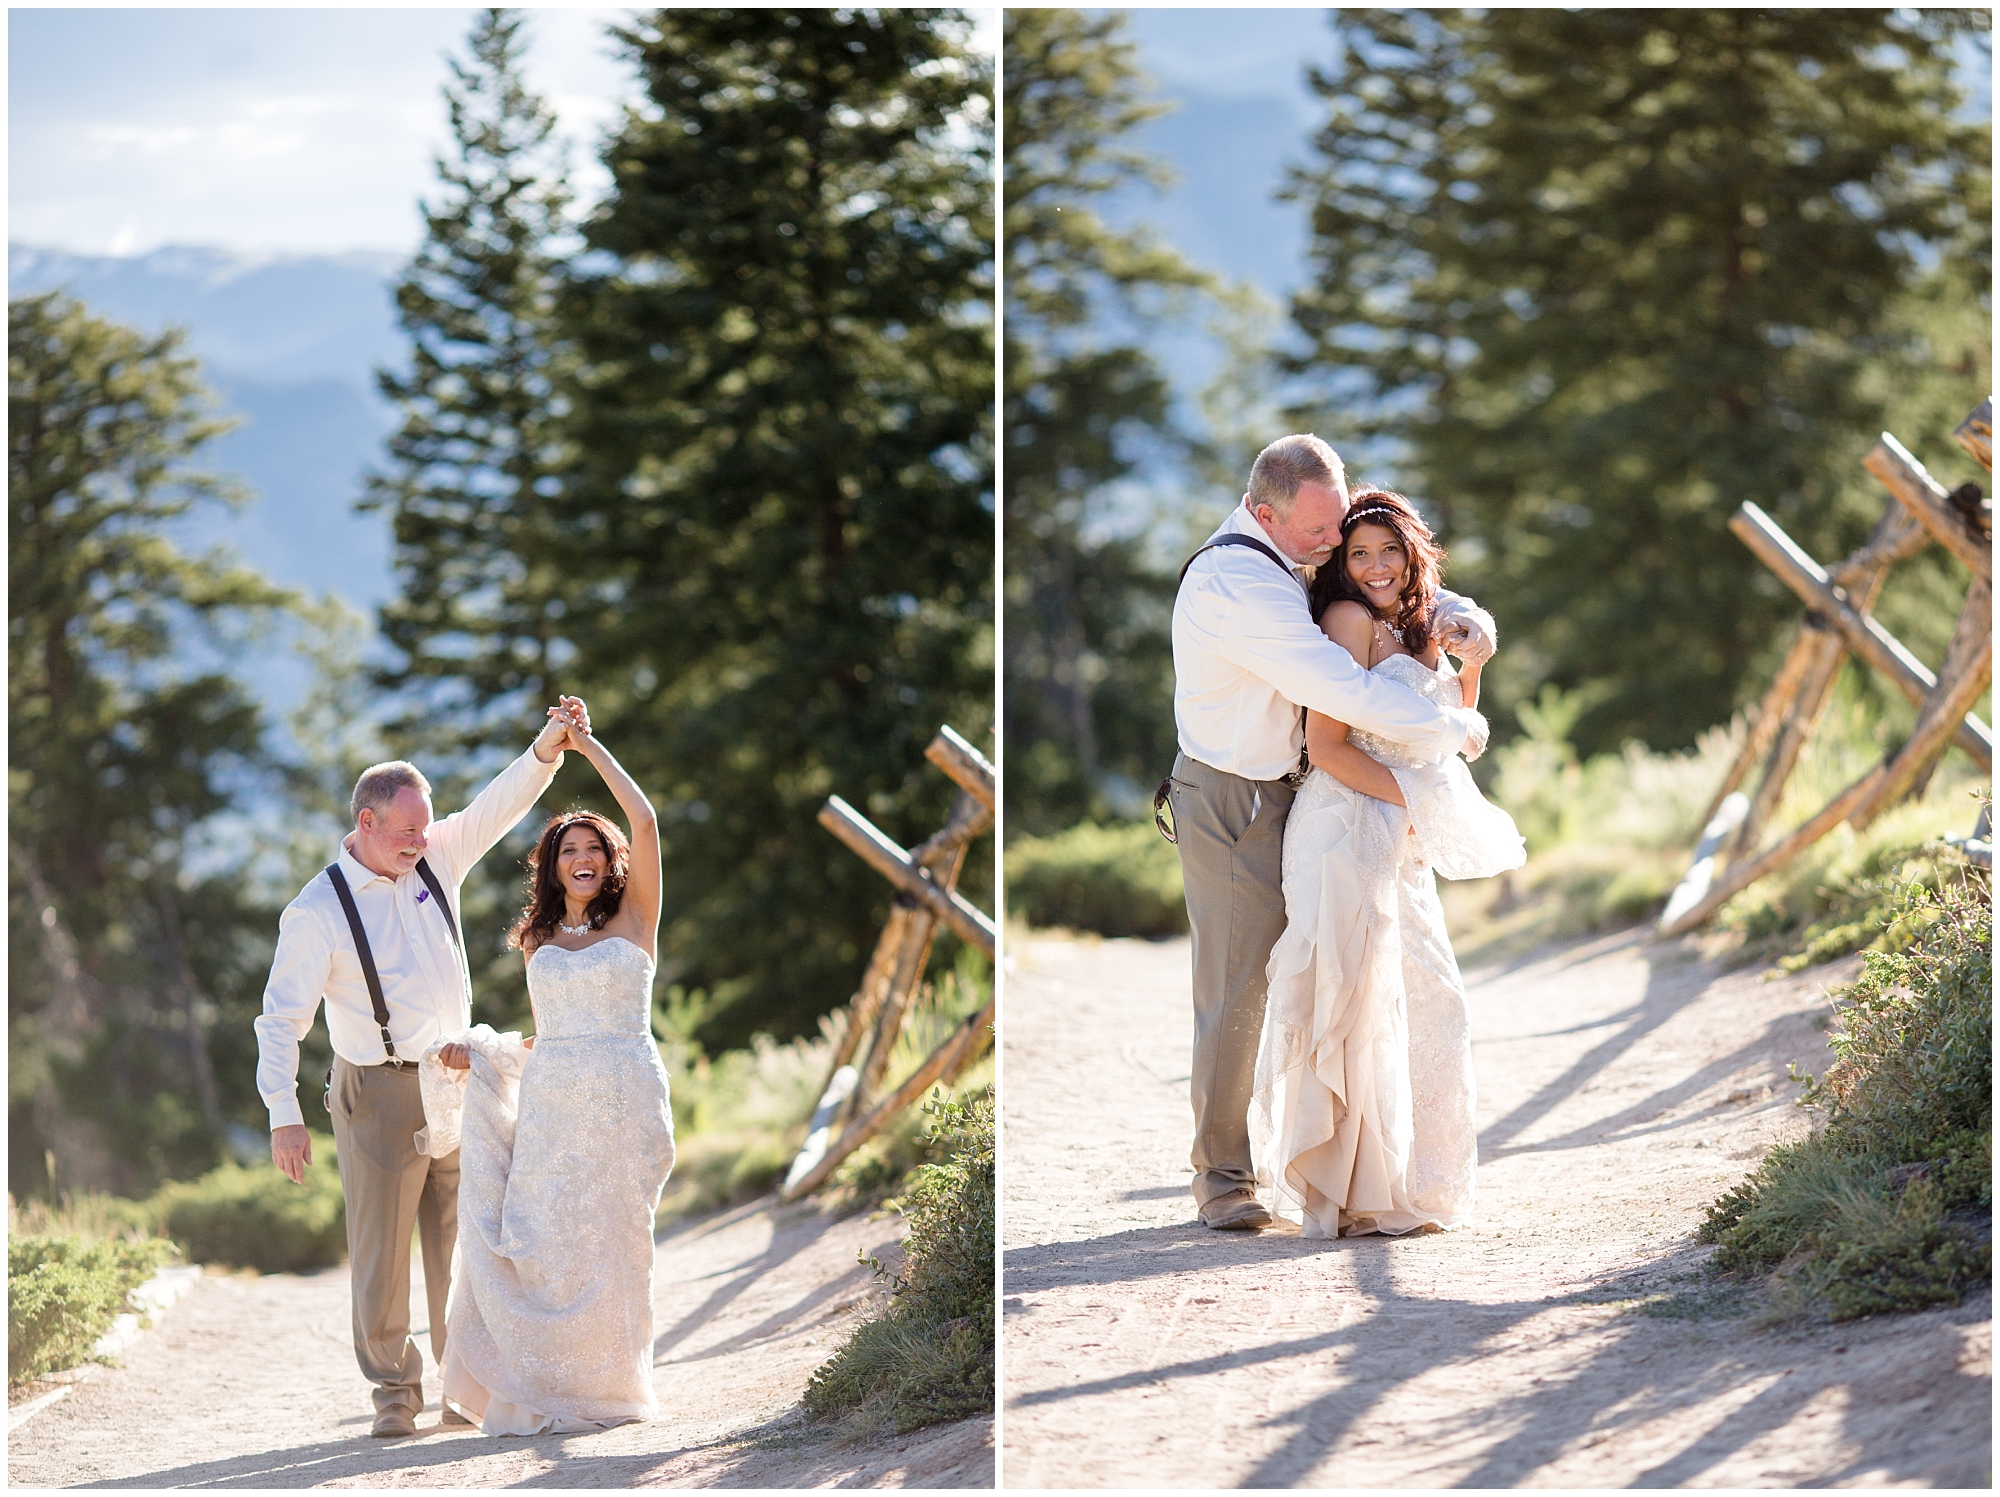 Couple dances together at their Colorado mountain wedding.